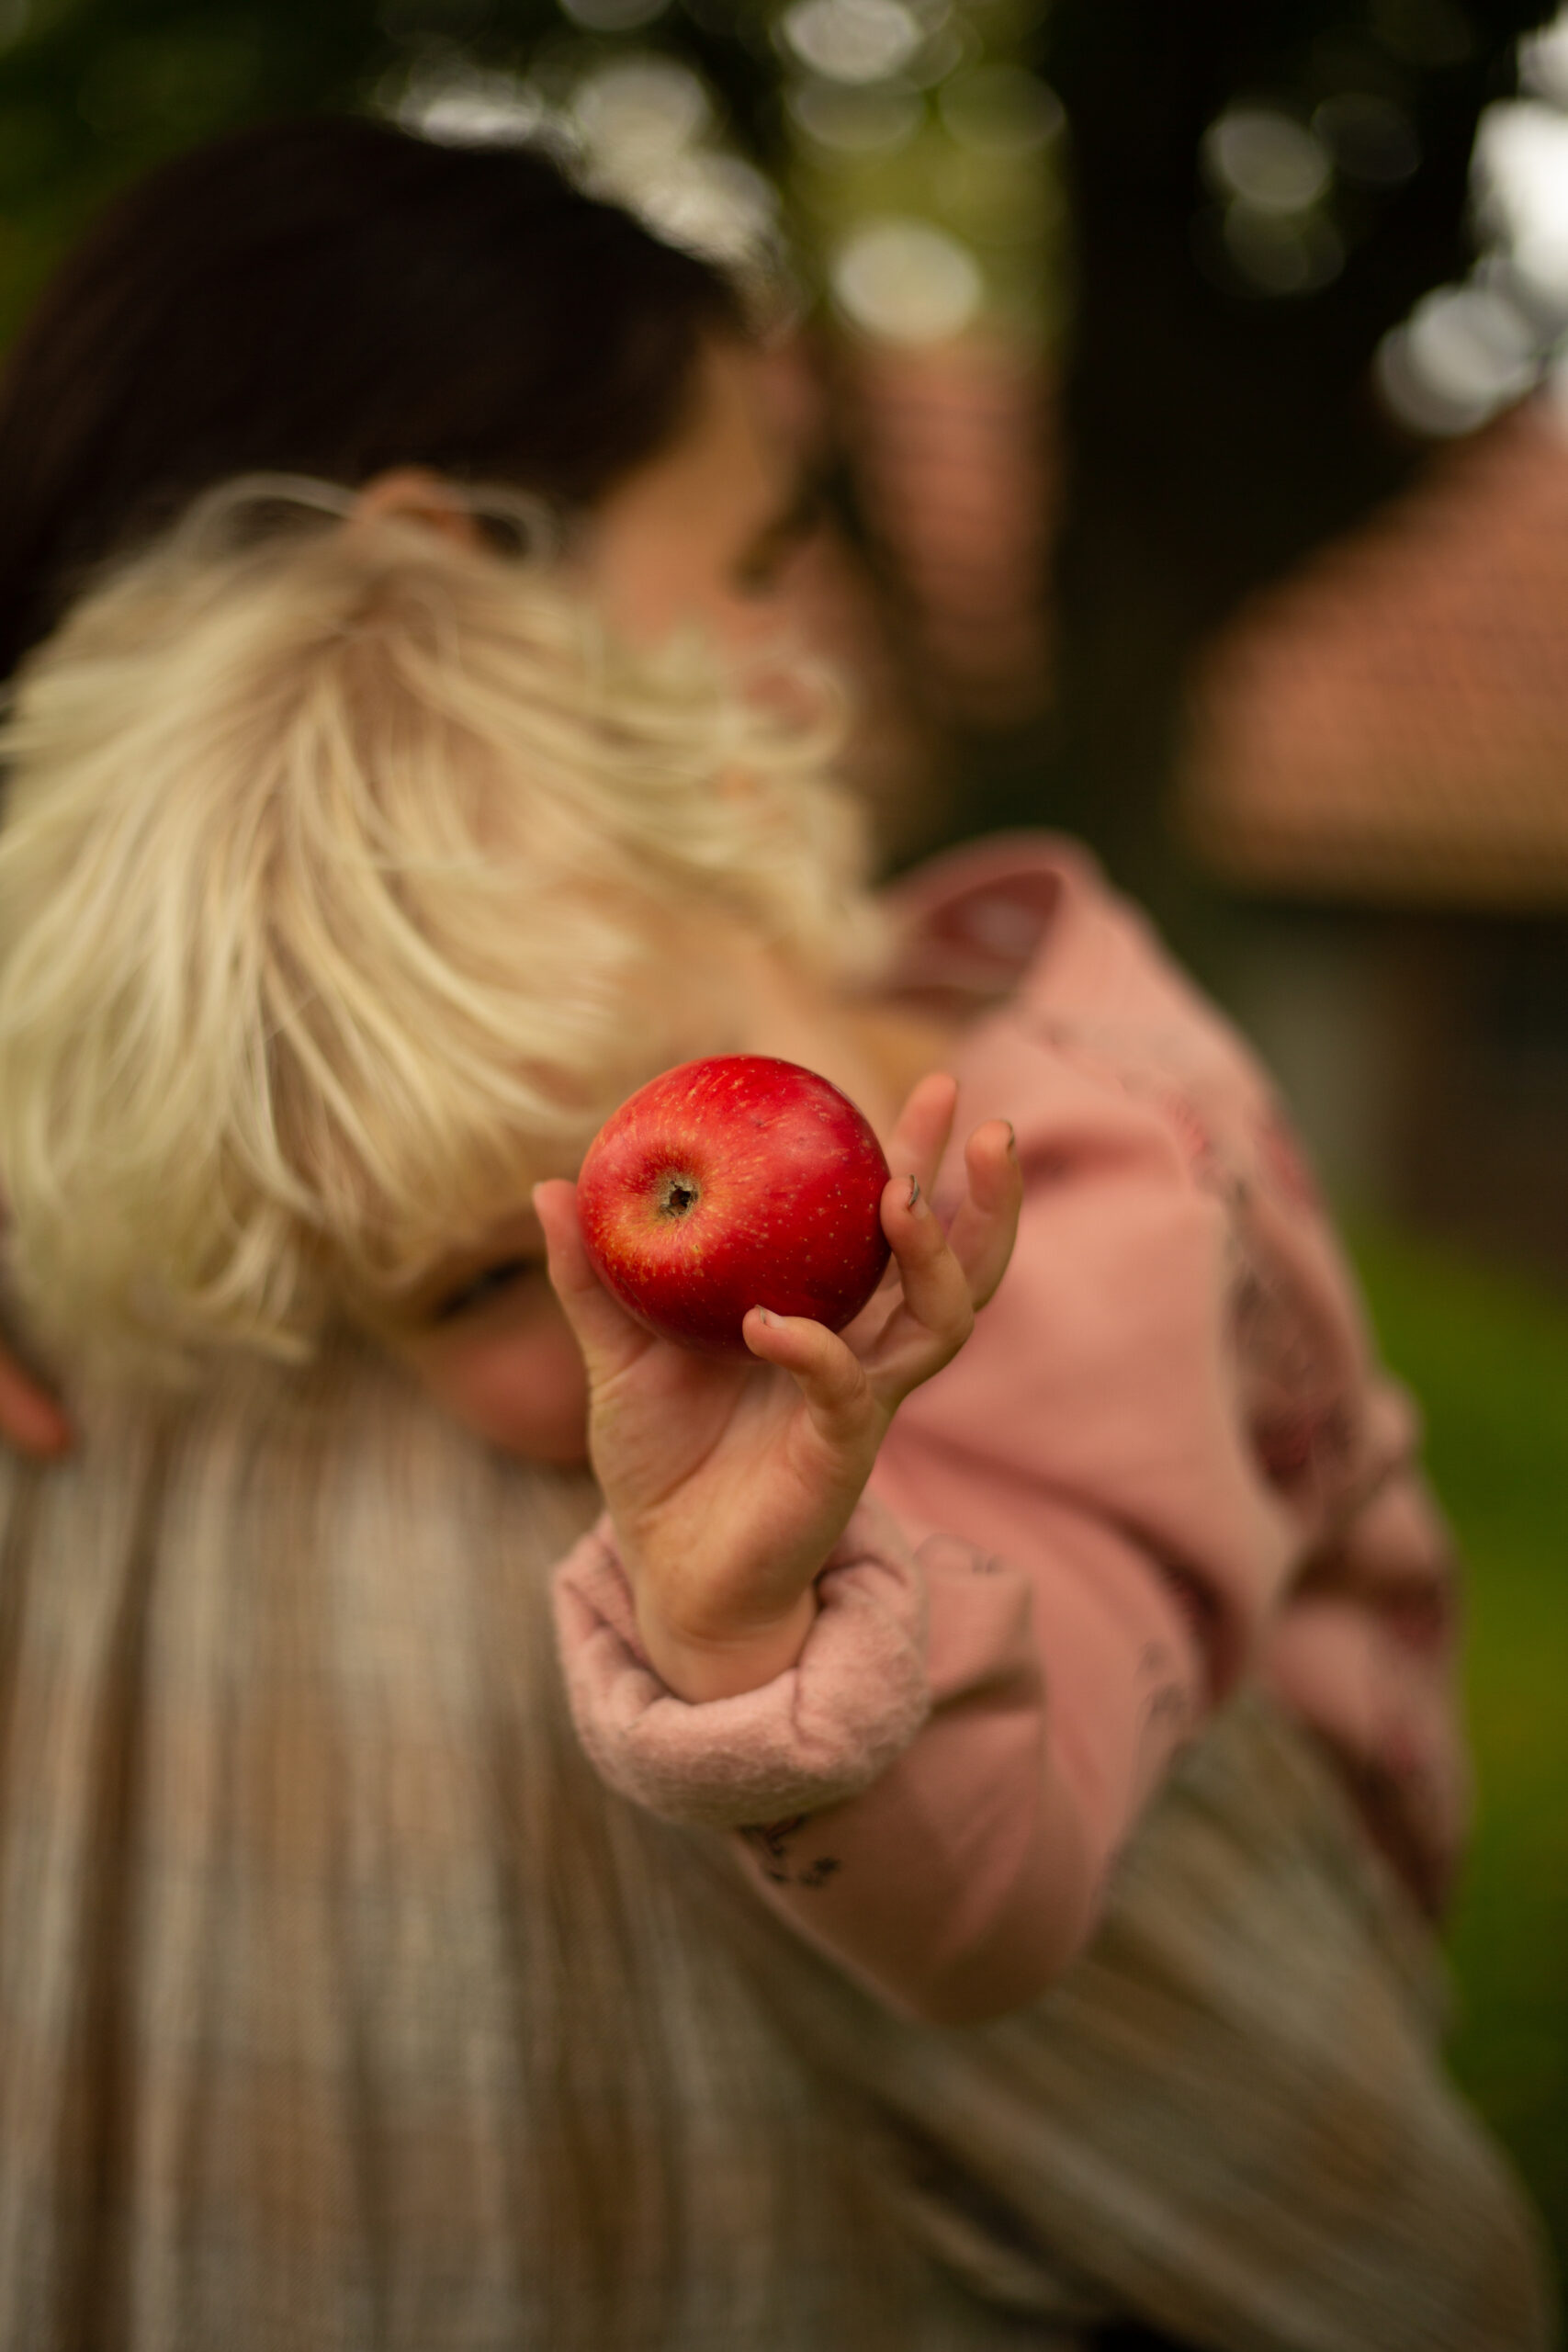 Meisje houd een appel vast voor de lens van de camera